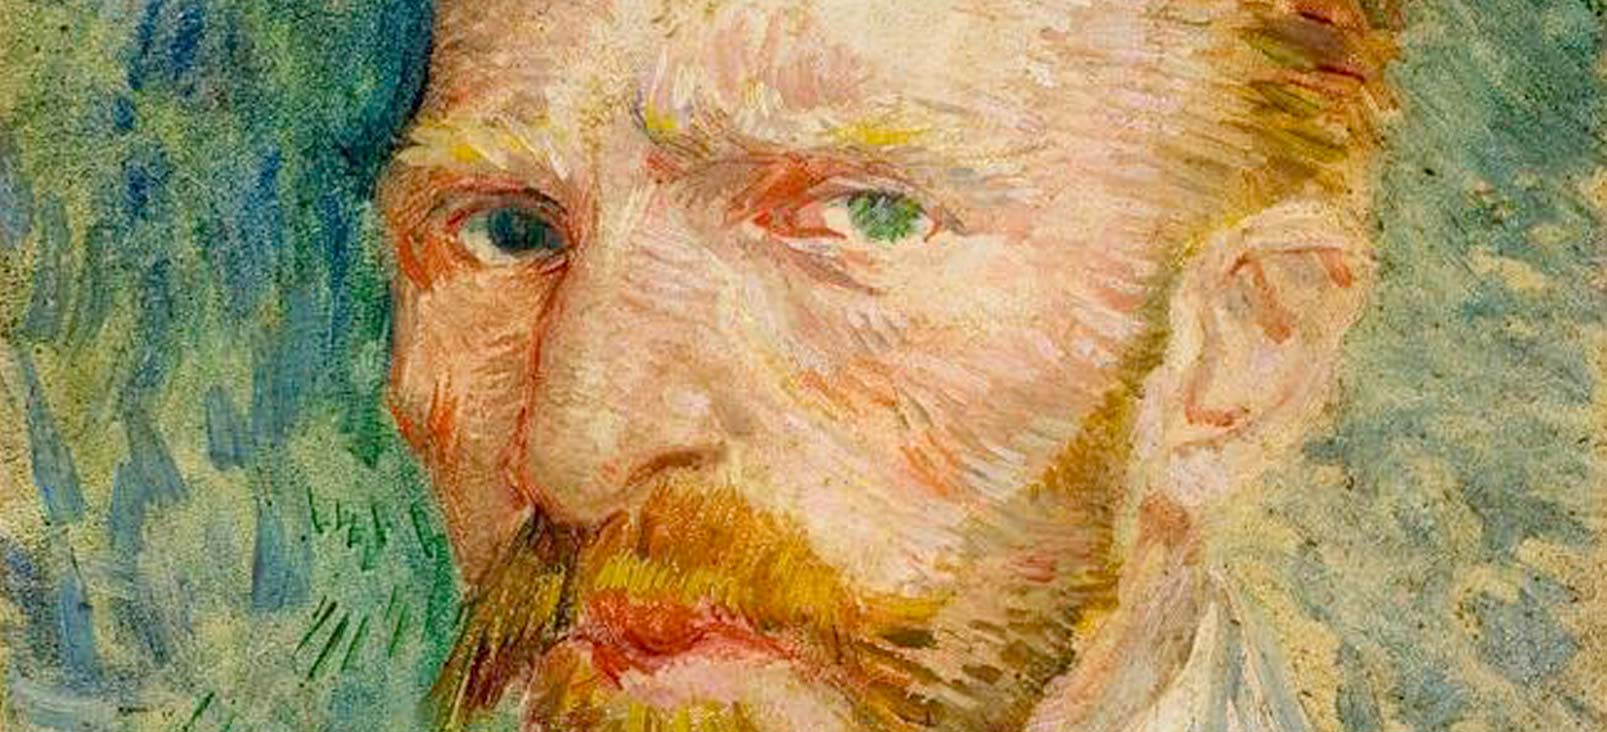 Van Gogh. Drawings and paintings.